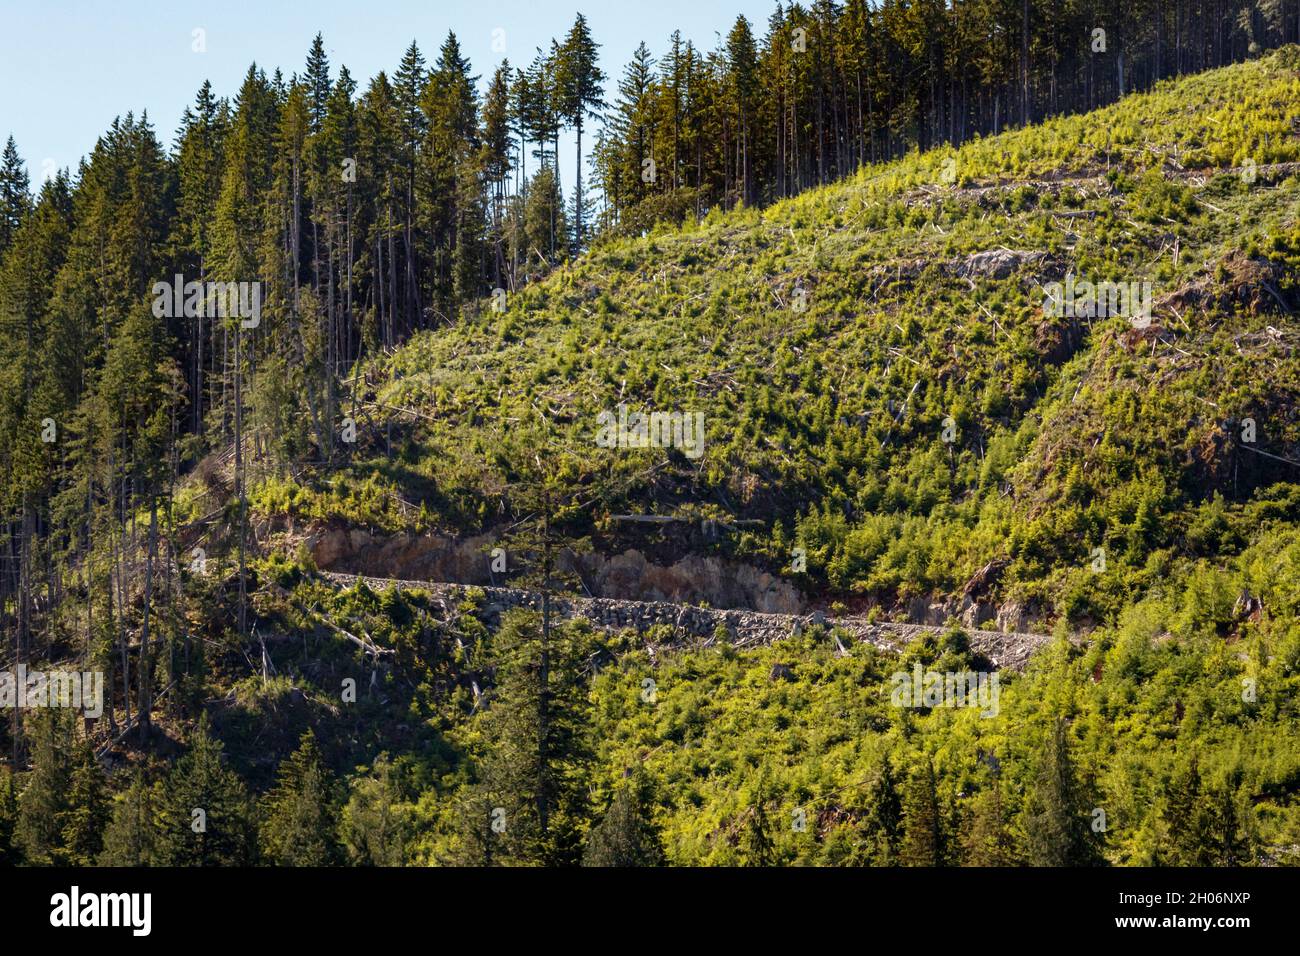 Una carretera maderera atraviesa una colina empinada que ha sido cortada y ahora se está veraneando después de replantar, en la costa de la Columbia Británica. Foto de stock